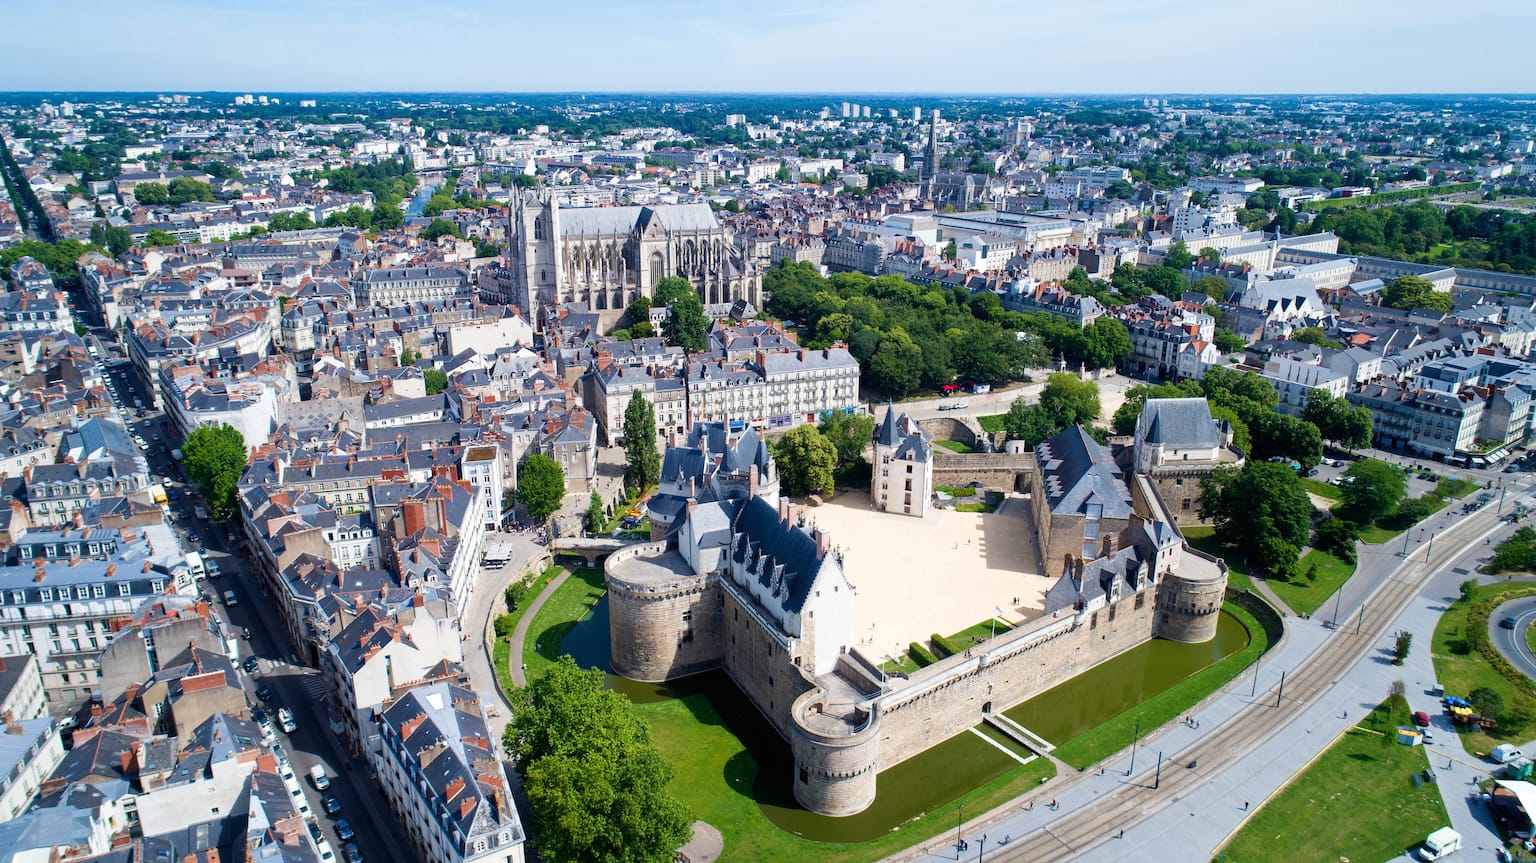 Vue sur le centre historique de Nantes et le château des Ducs de Bretagne, à proximité de notre agence RGPD basée aux alentours de Nantes.